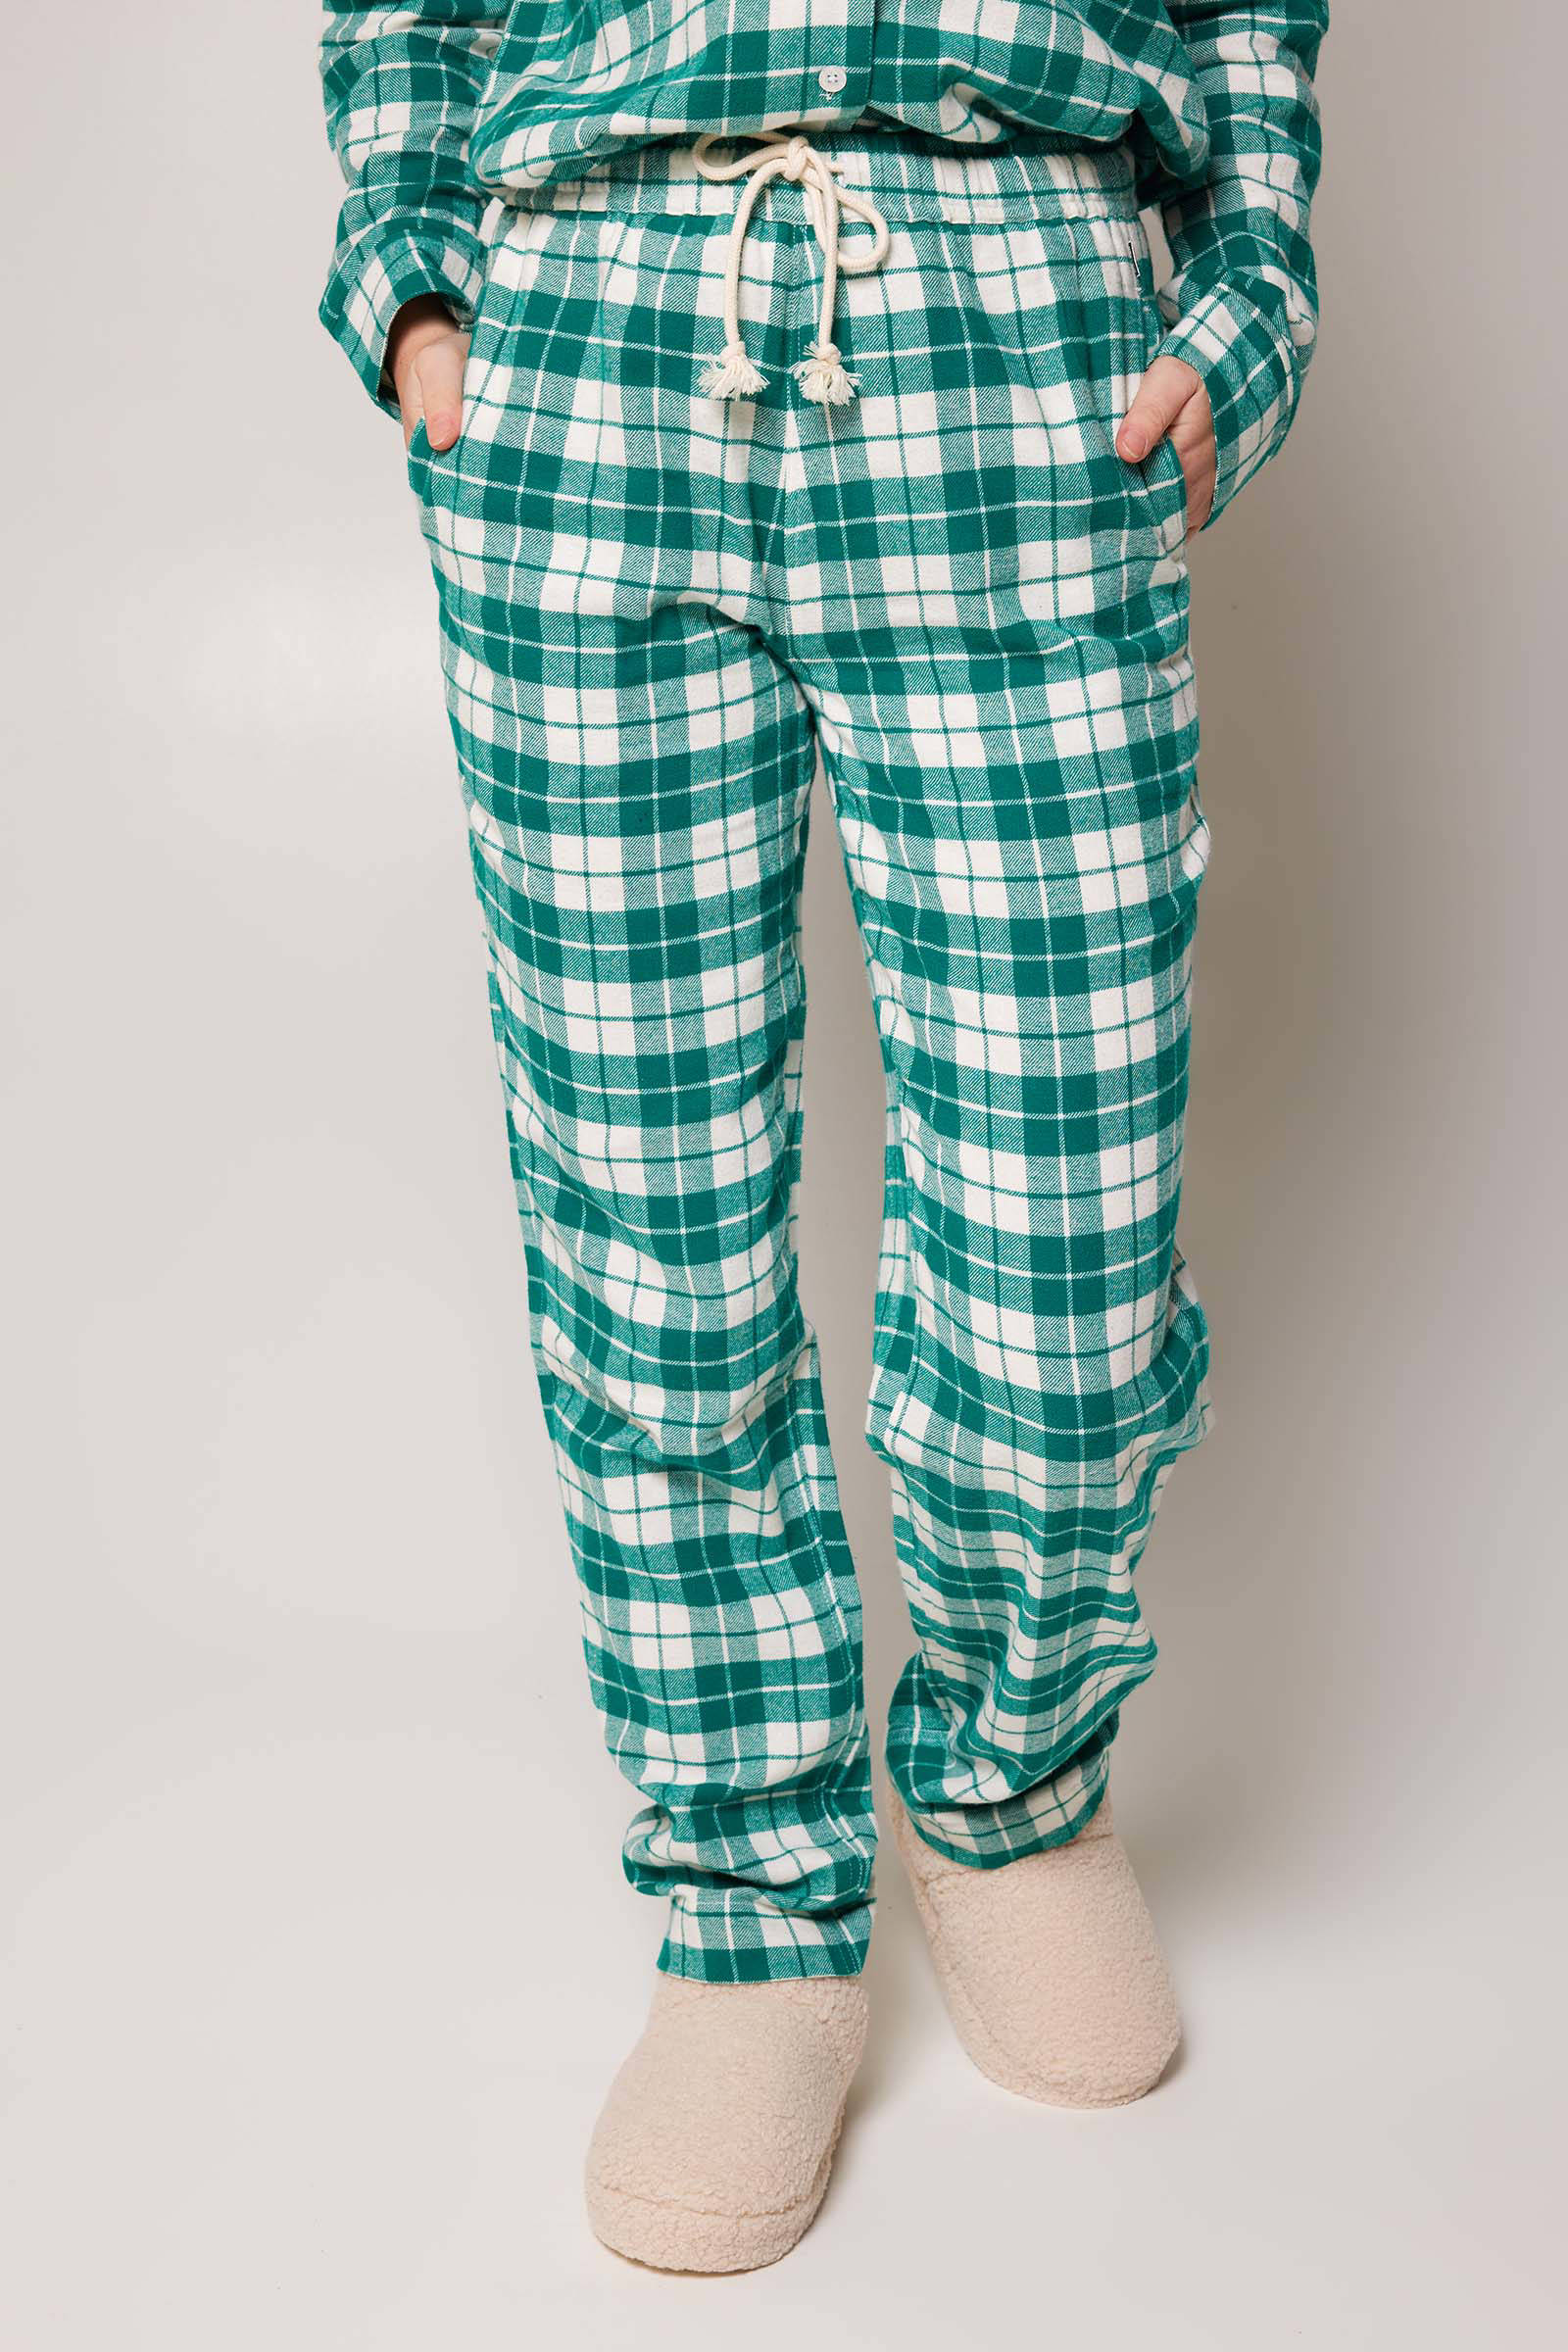 Kleding Dameskleding Pyjamas & Badjassen Pyjamashorts & Pyjamabroeken Dames herfstbladeren pyjama broek 